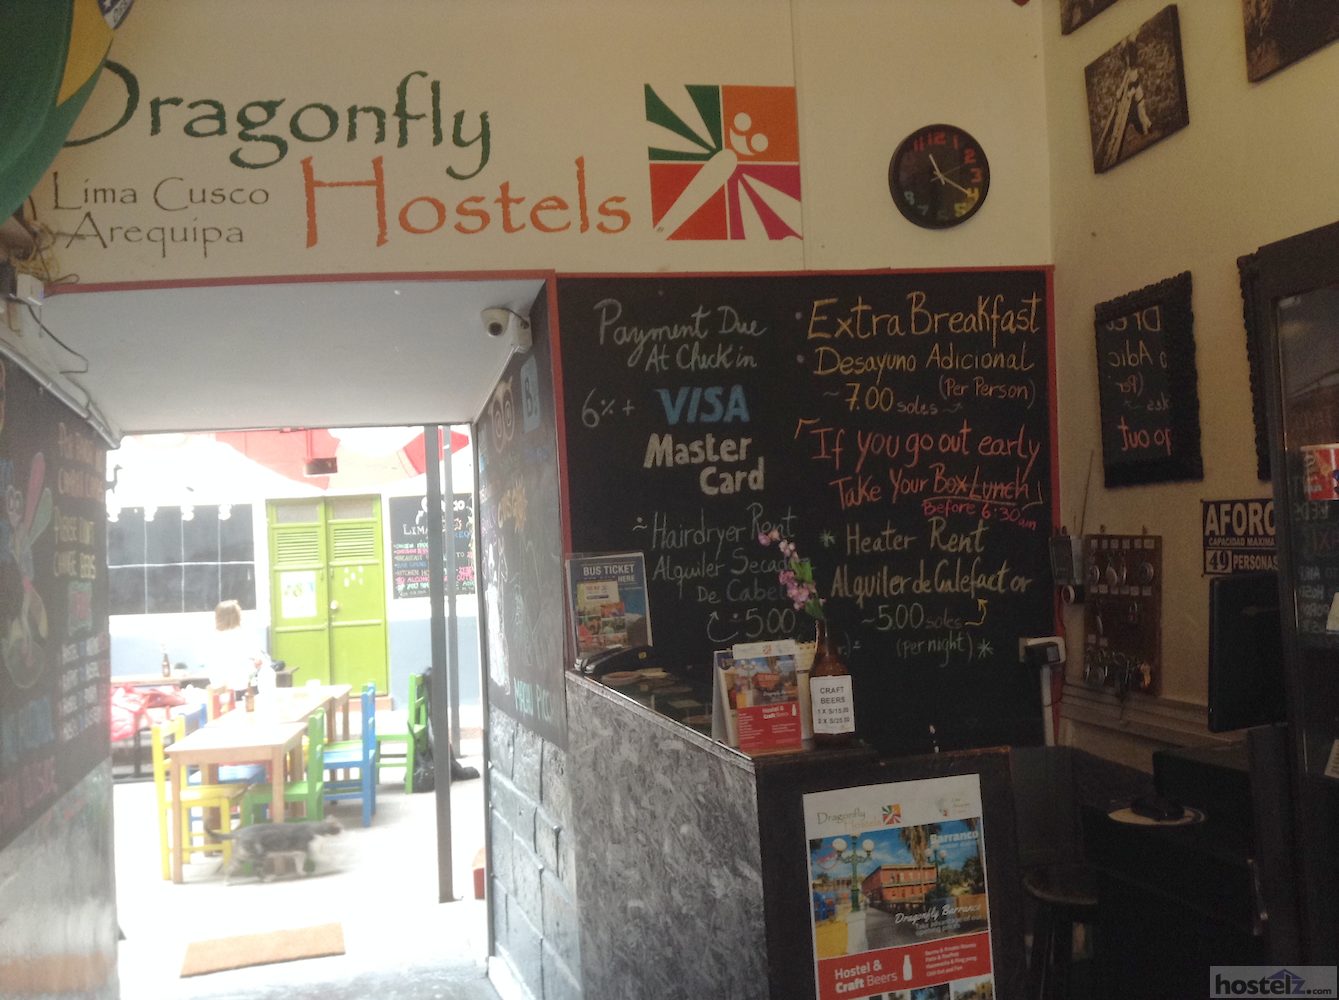 Dragonfly Hostels, Cusco